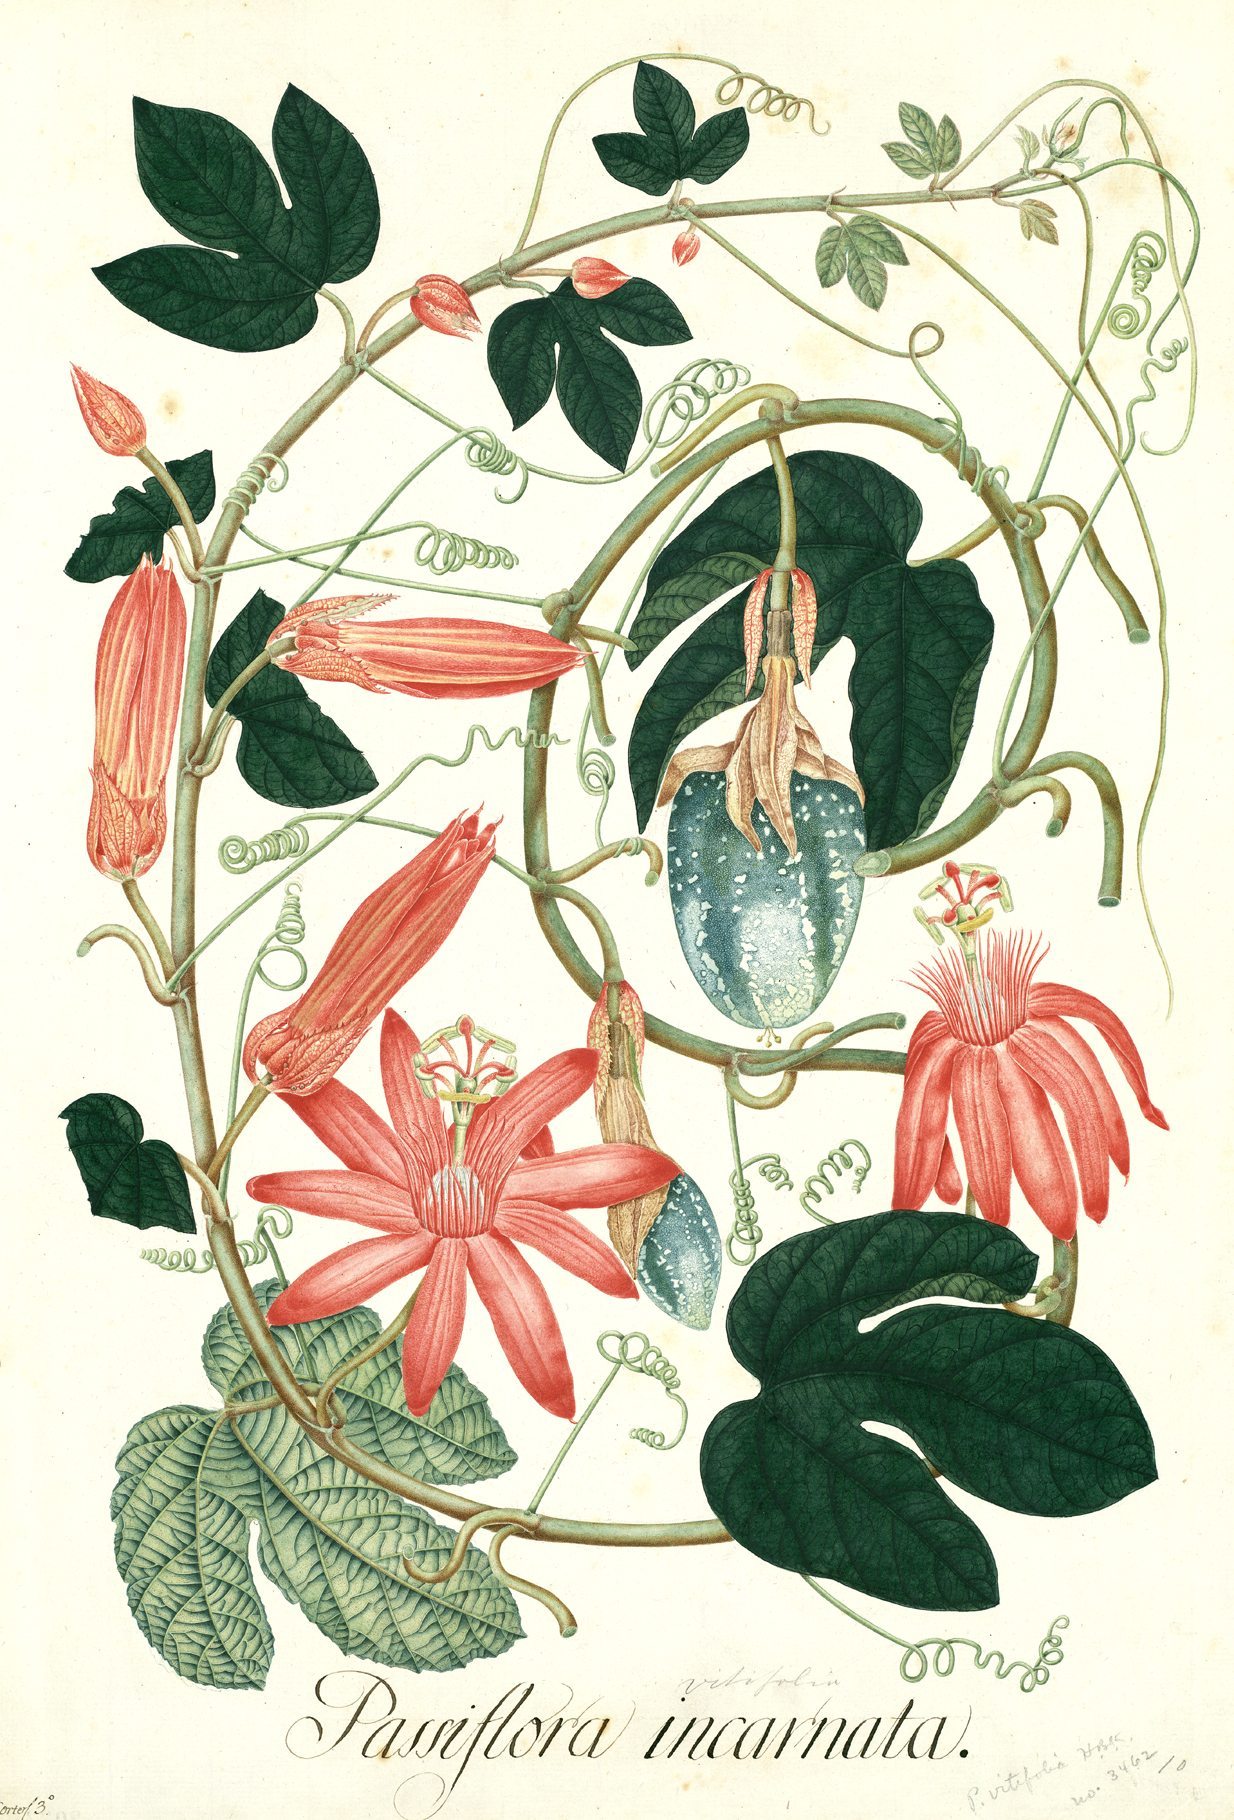 El Botánico saca a la luz nuevas láminas de Mutis, que unen el virtuosismo  y el juego artístico - EFEverde